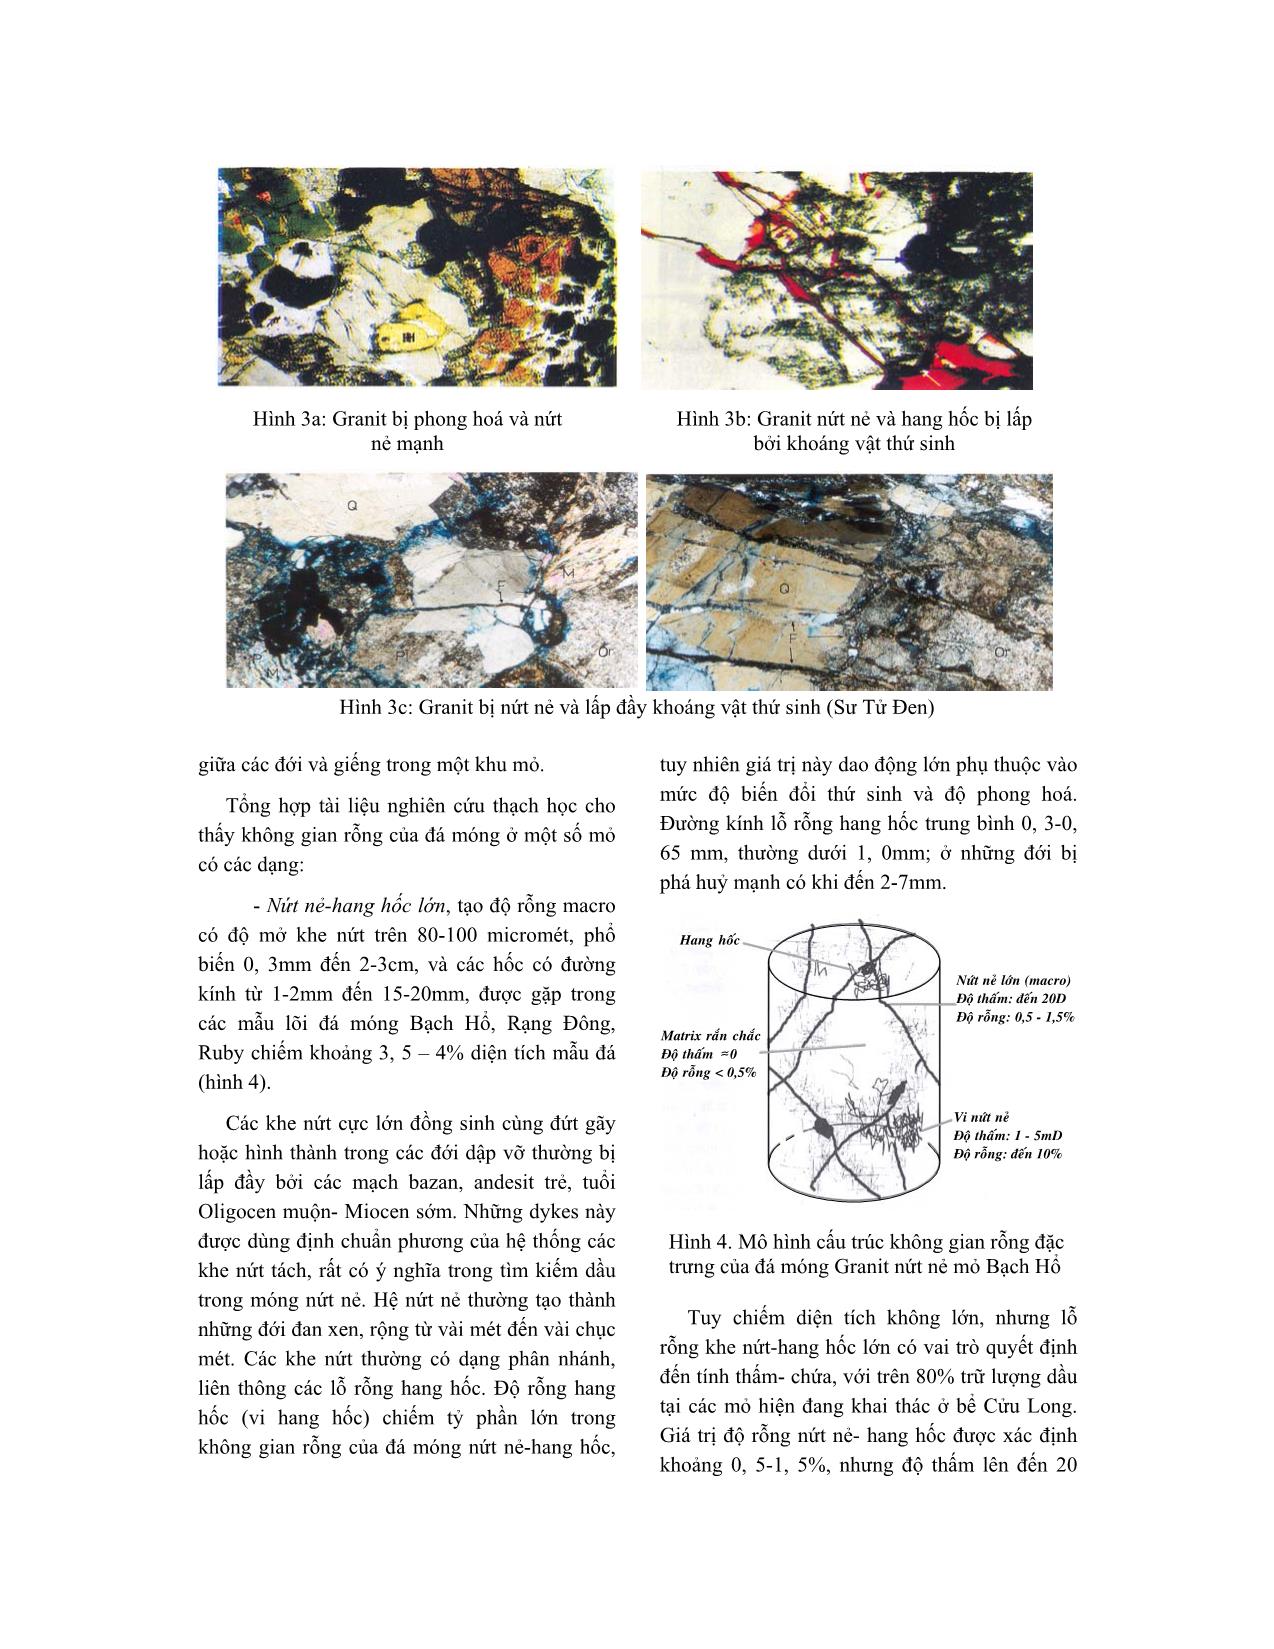 Chất lượng thấm- Chứa của đá móng nứt nẻ ở bể Cửu Long trang 4